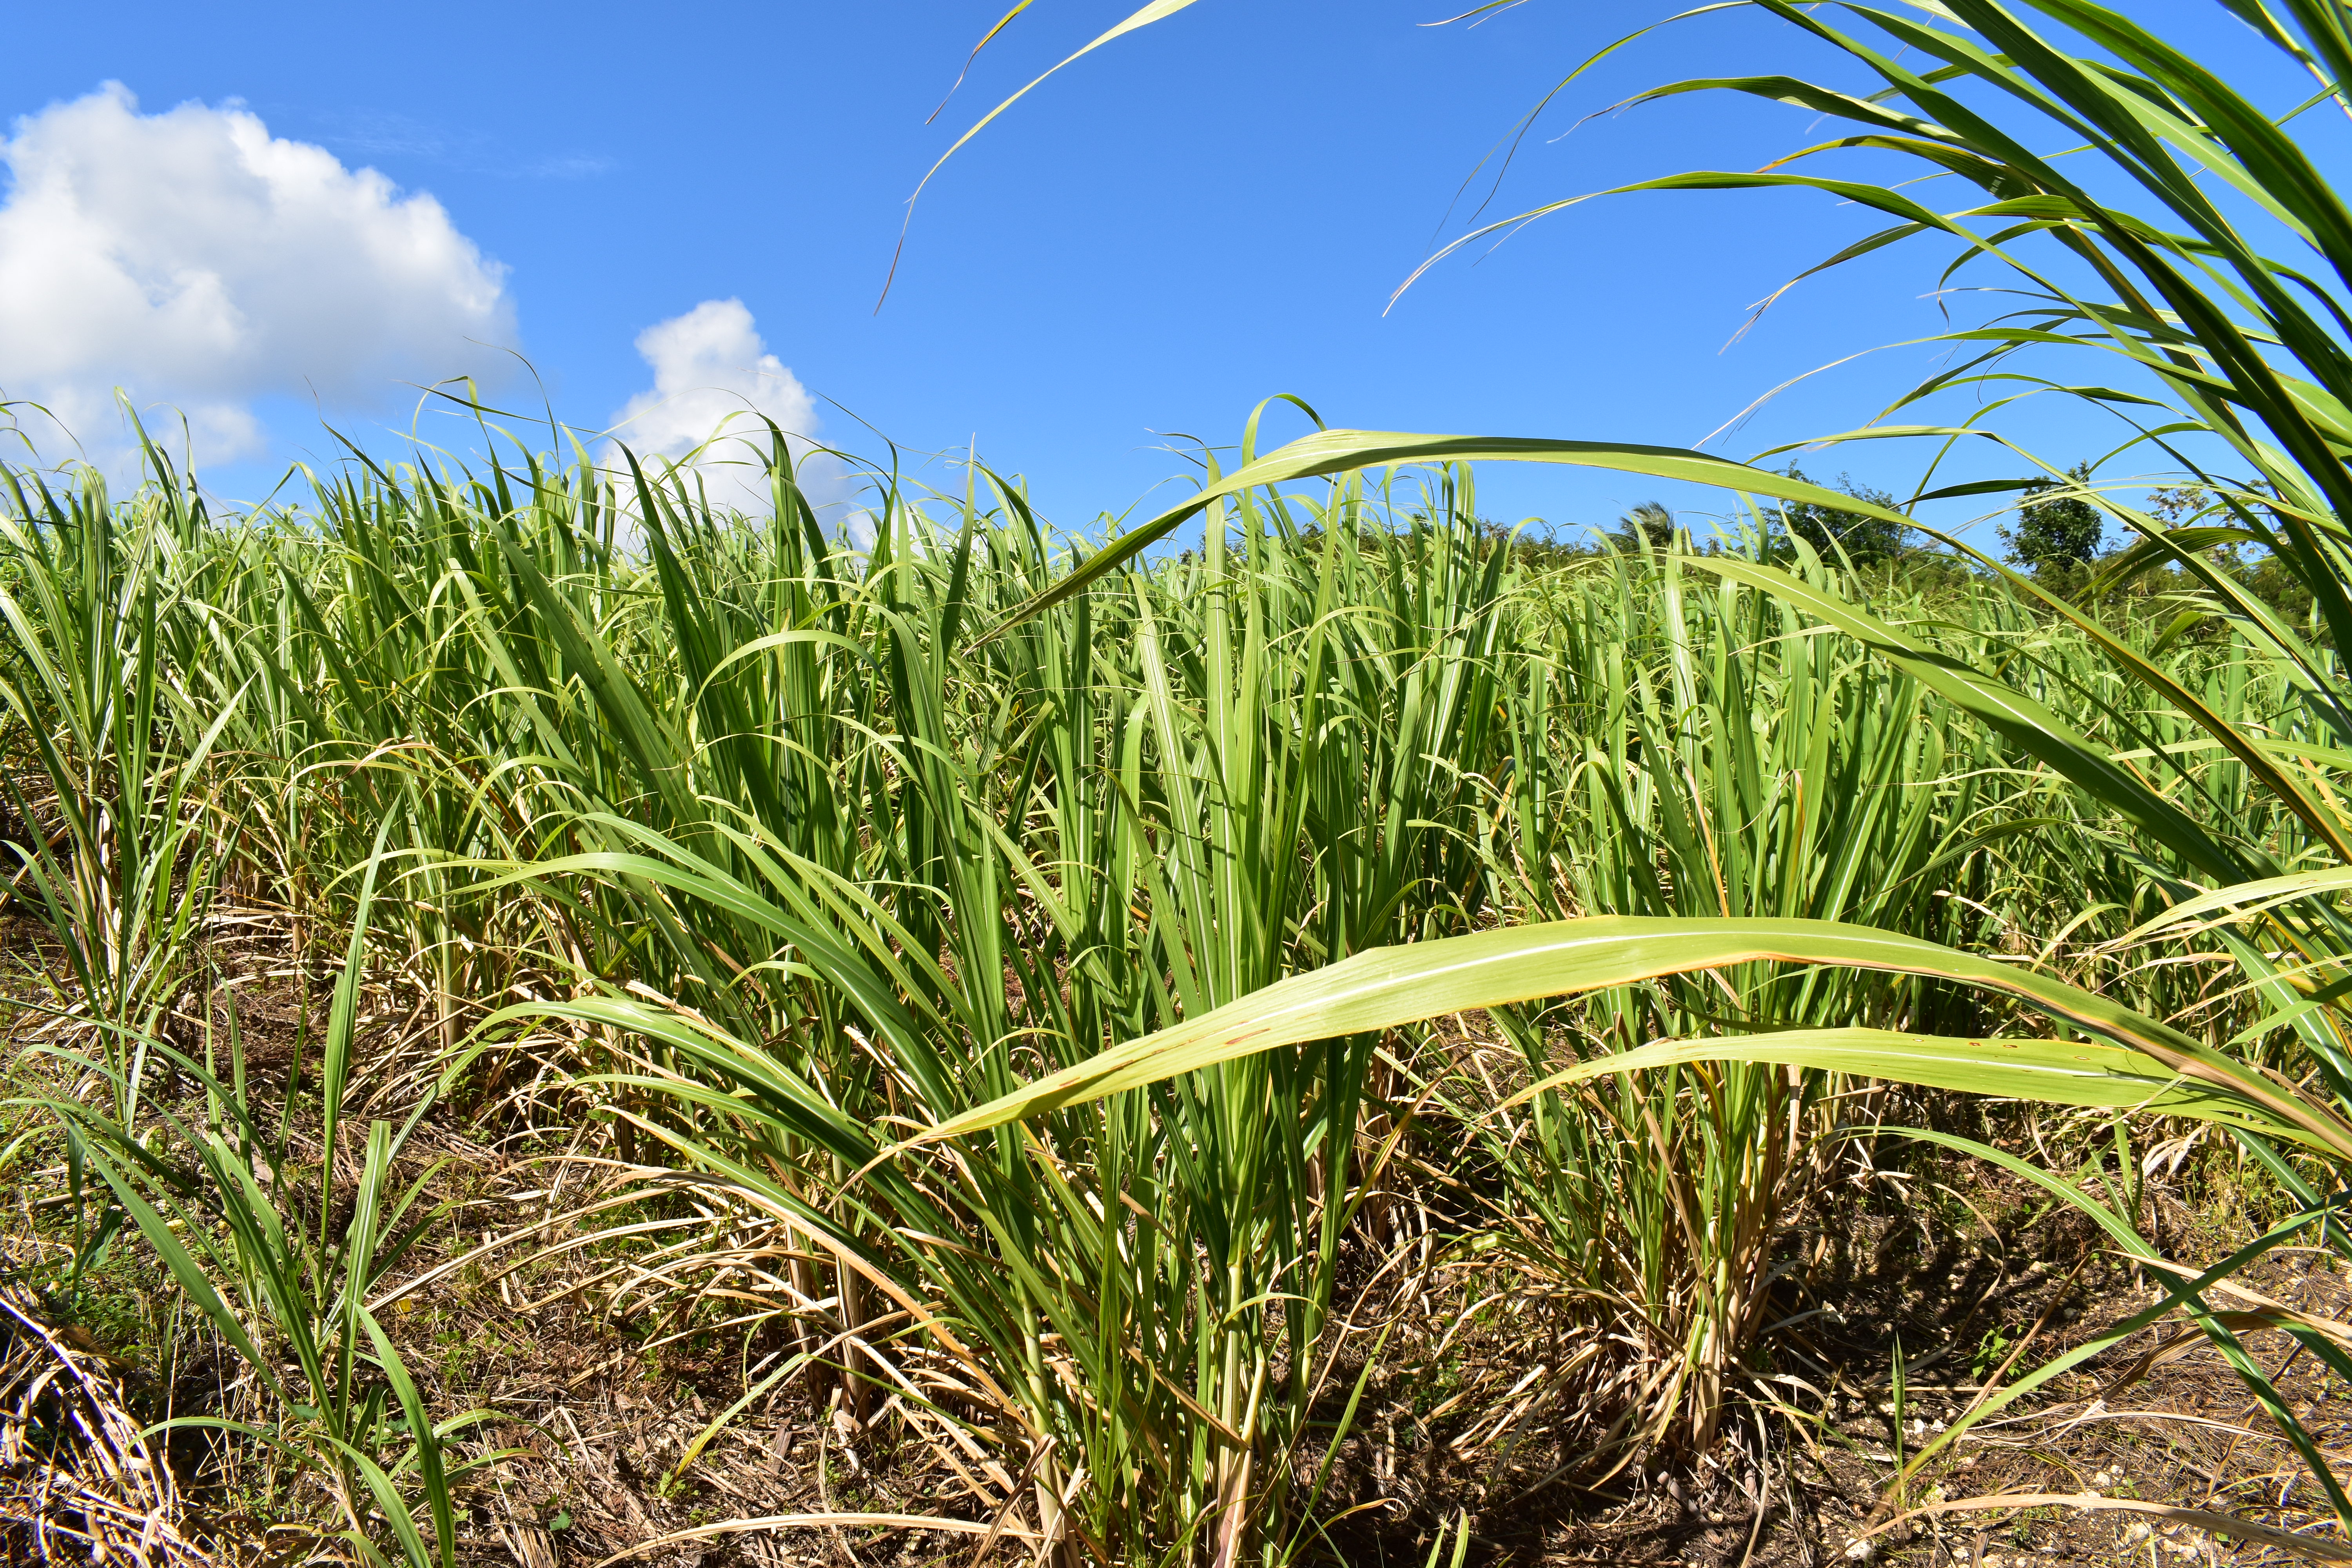 En Martinique, la filière canne à sucre en détresse